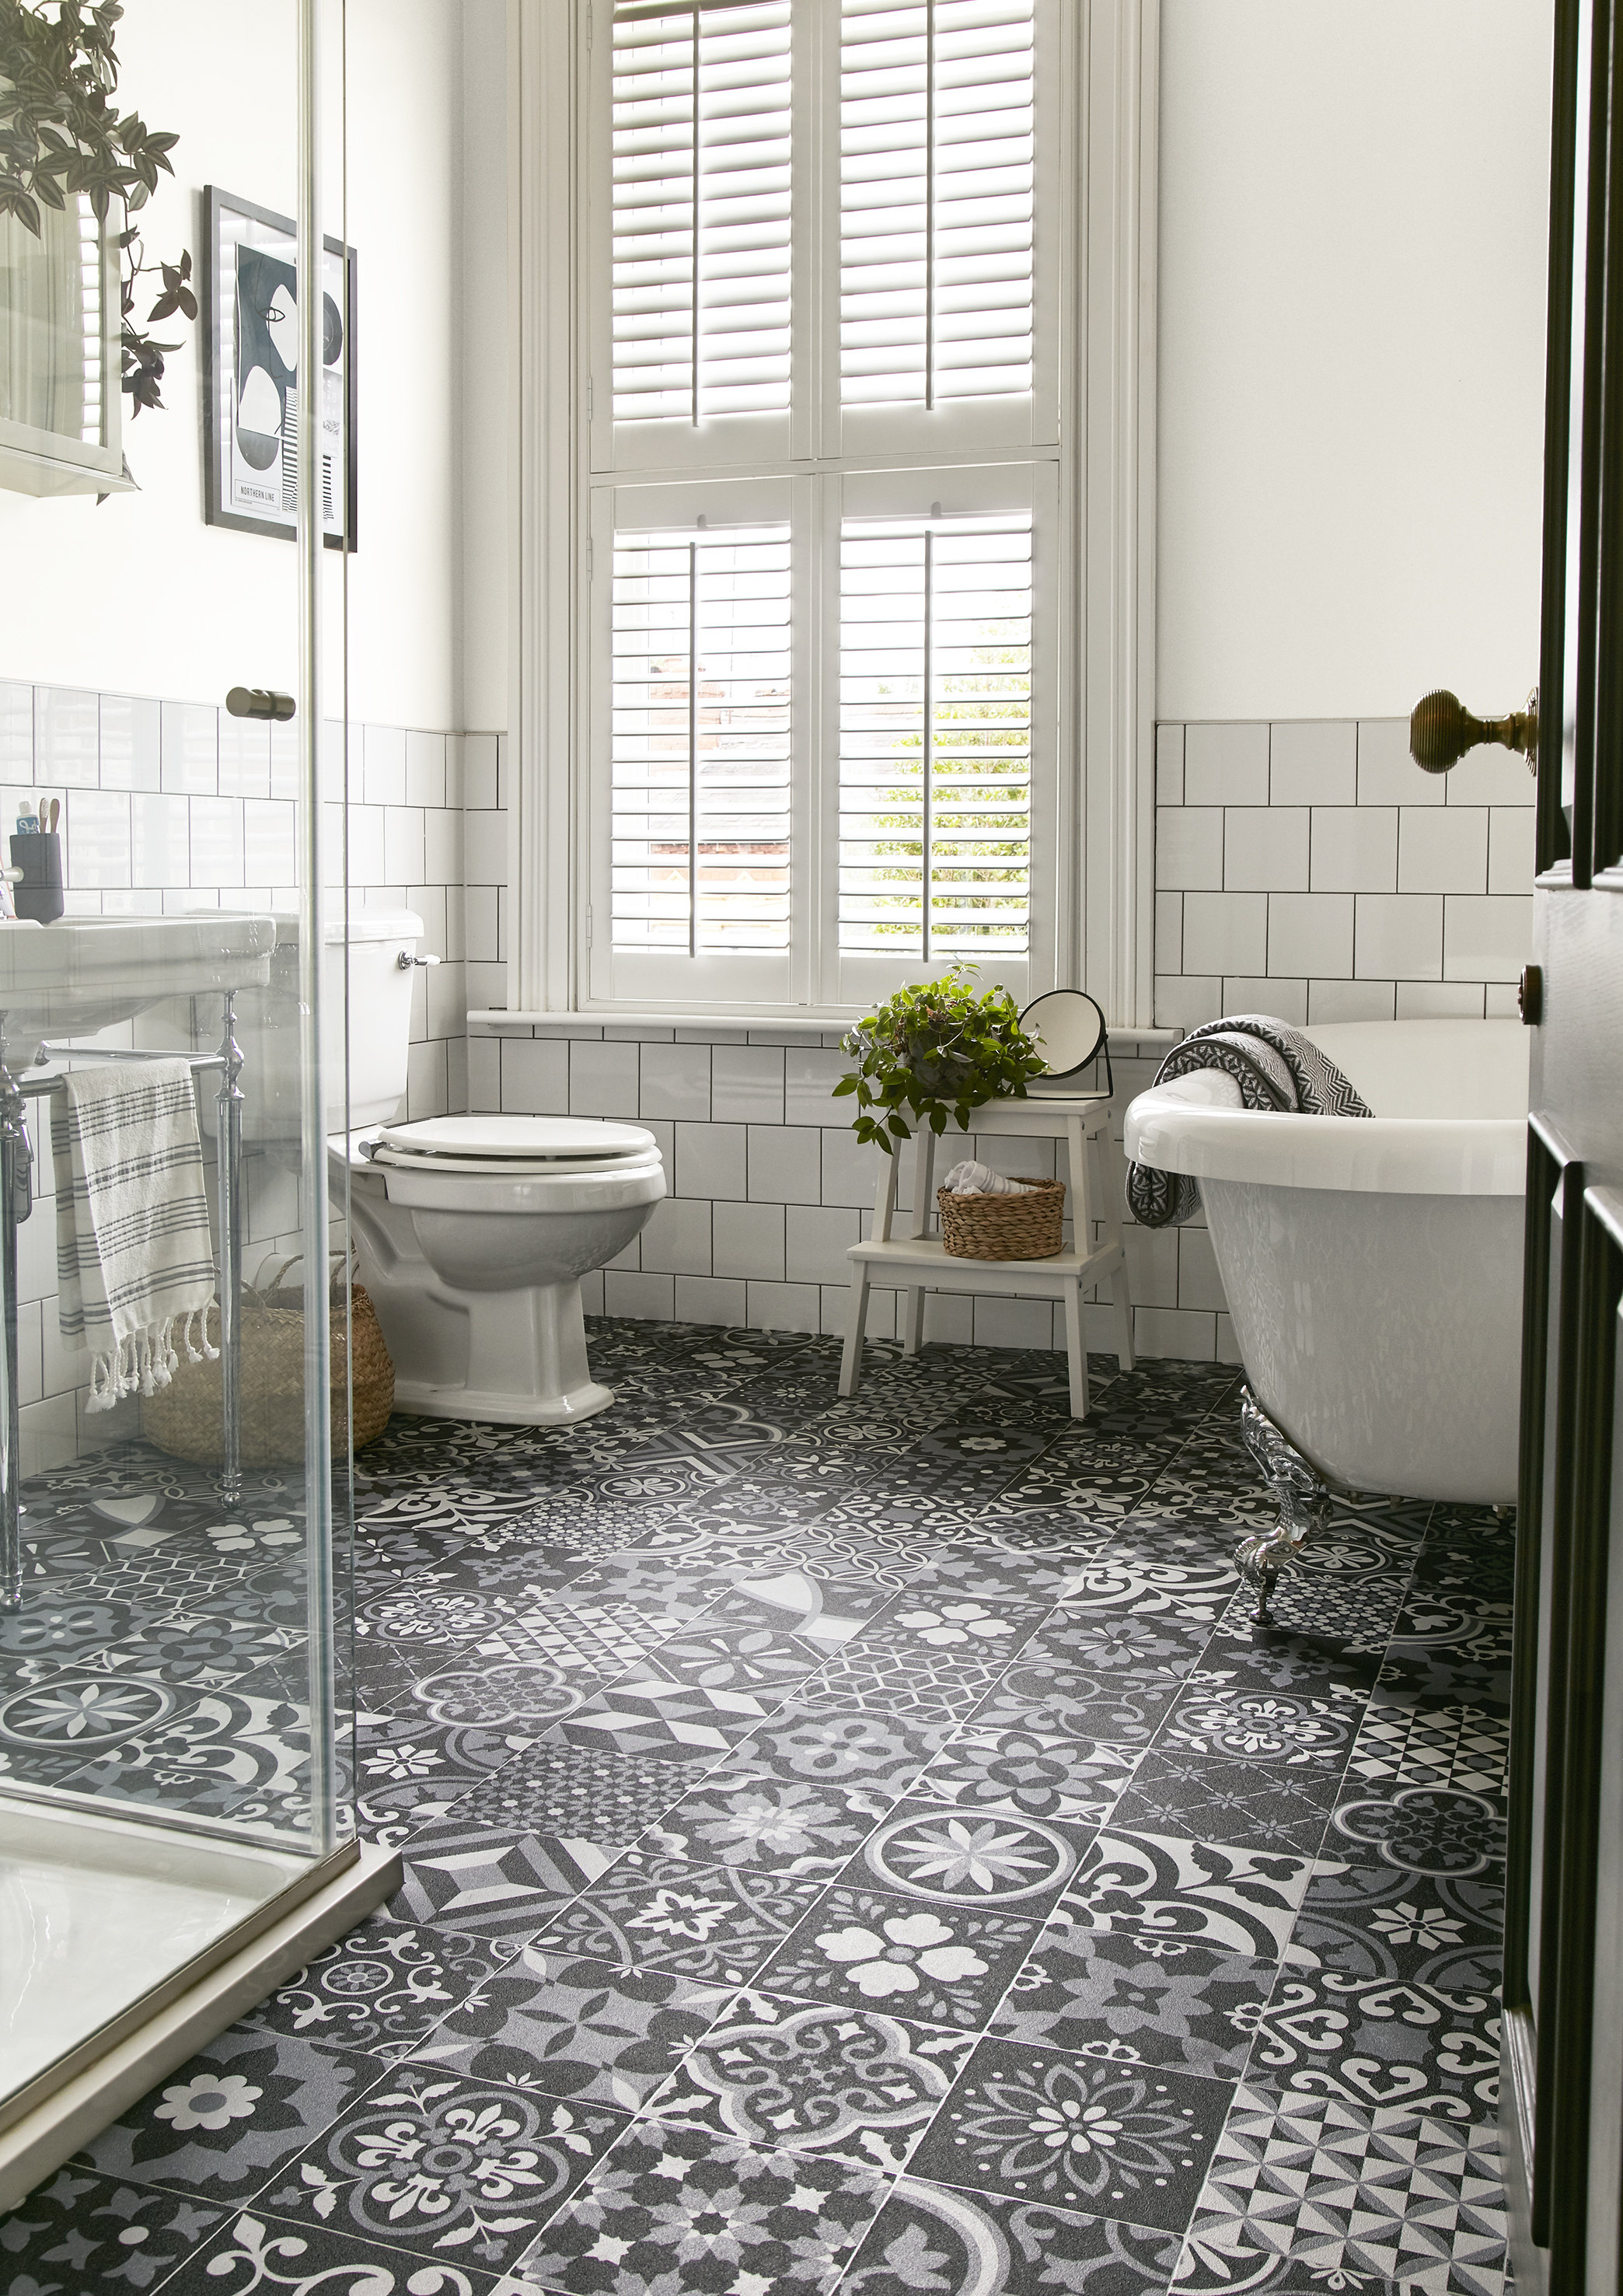 salle de bain blanche avec baignoire sur roulettes, volets, sol gris, noir et blanc à motifs en vinyle